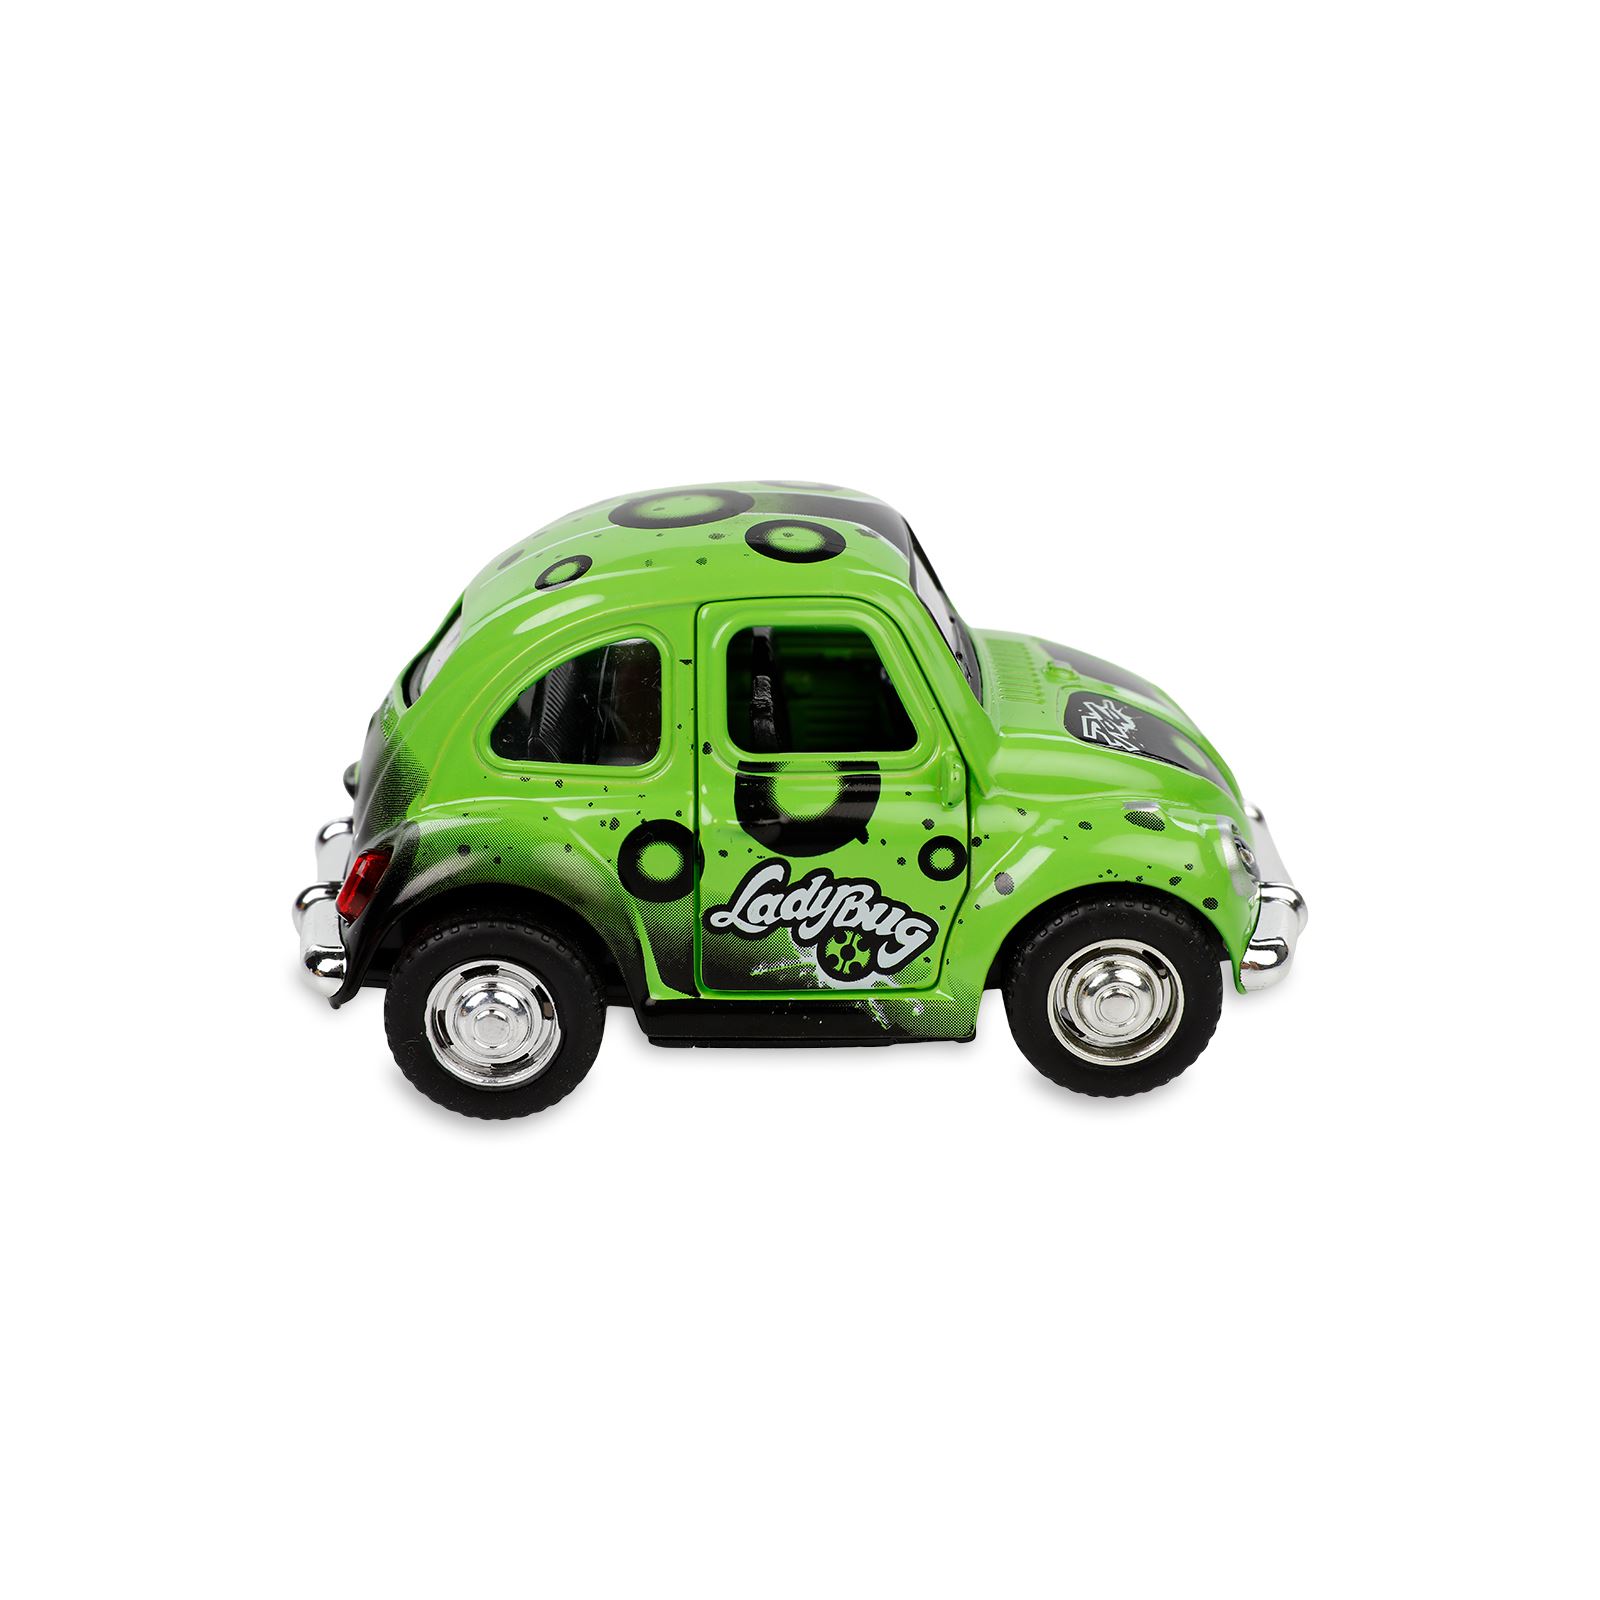 Vardem Oyuncak Çek Bırak Kaplumbağa Desenli Araba Yeşil